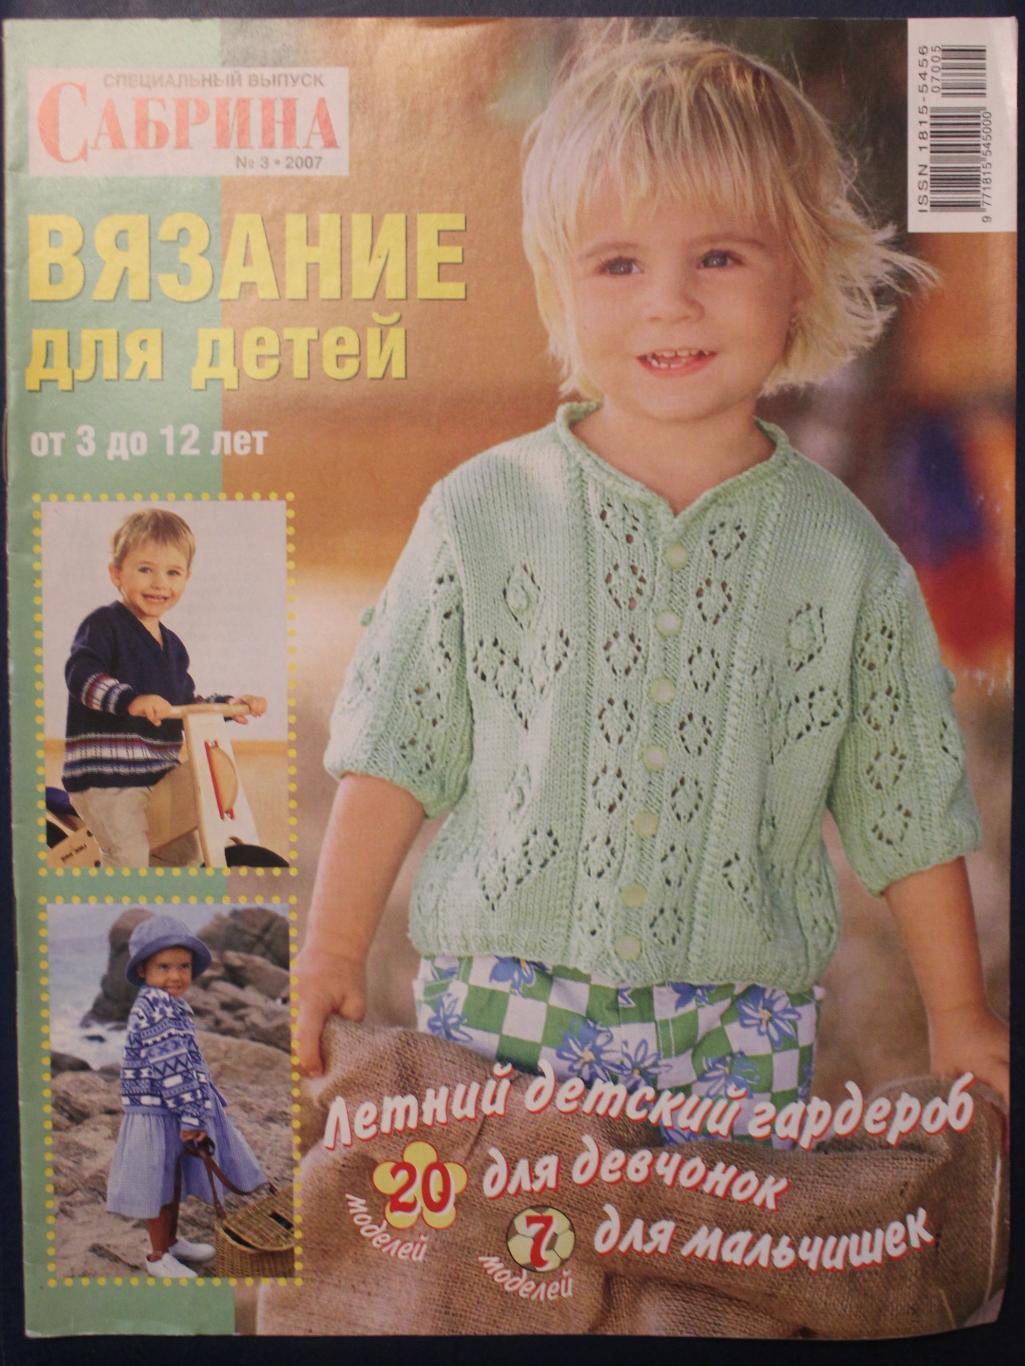 Вязание для детей от 3 до 12 лет специальный выпуск журнала Сабрина 3-2007